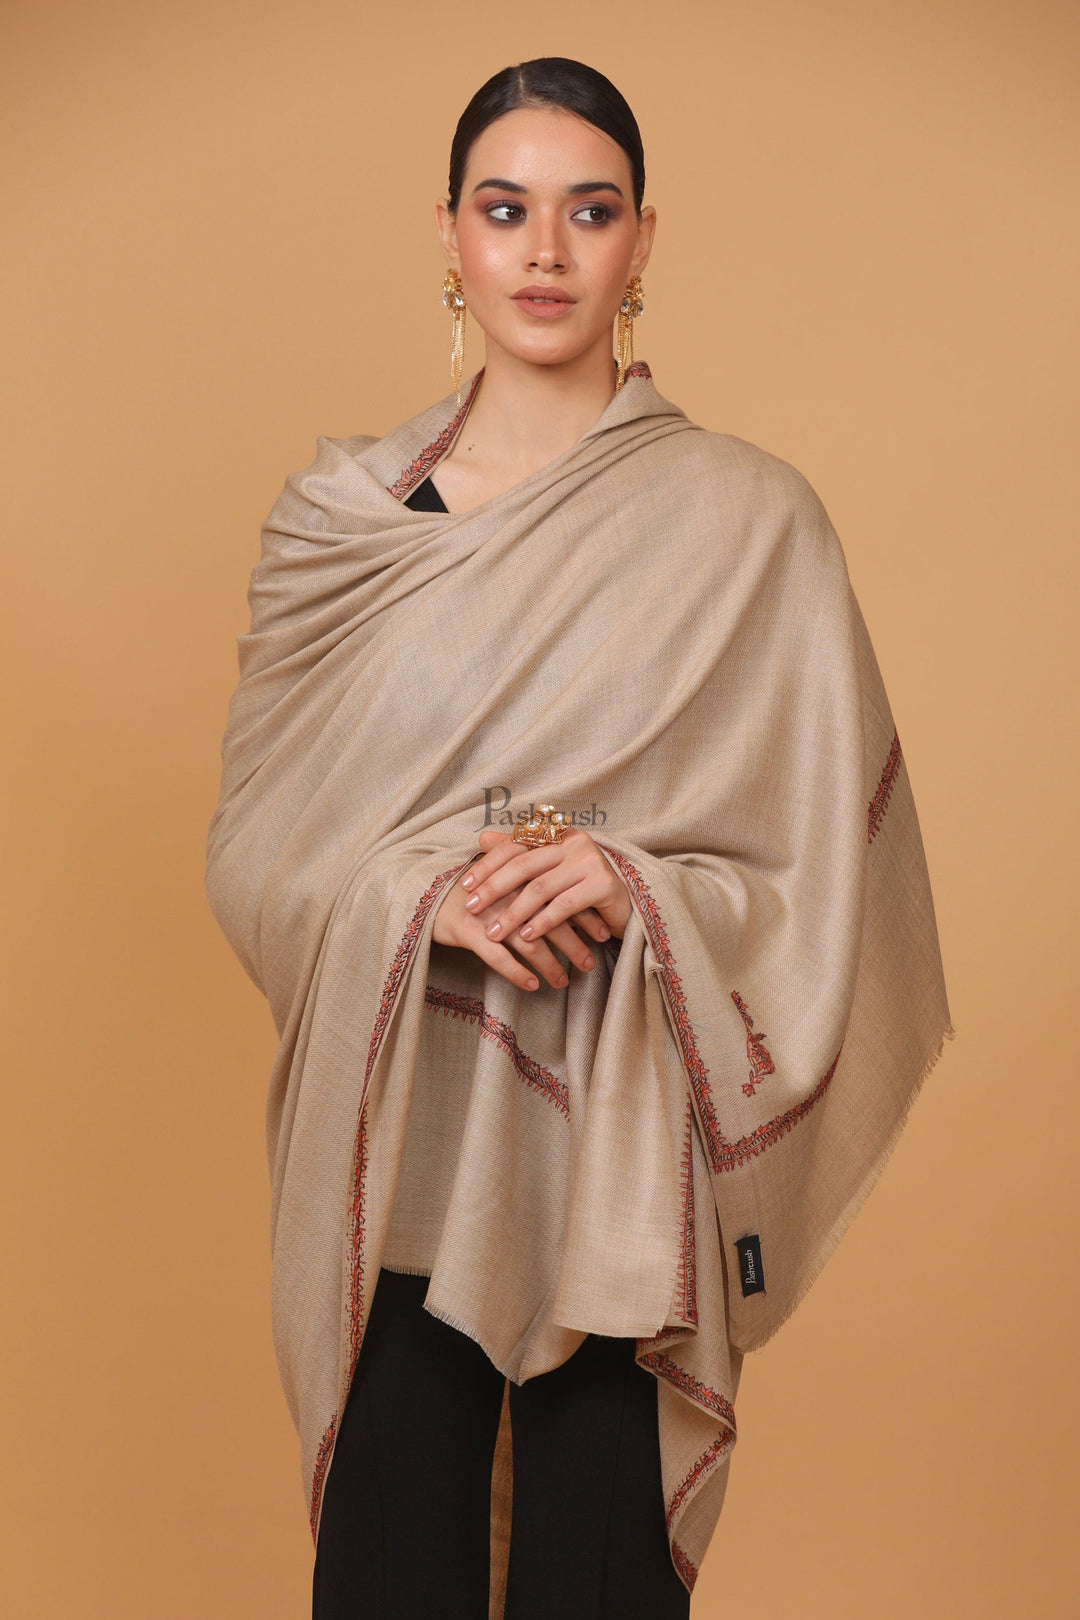 https://pashtush.in/cdn/shop/products/pashtush-pashmina-pashtush-womens-fine-wool-shawl-100-hand-embroidery-kingri-design-taupe-40769848344891.jpg?v=1686662047&width=1080